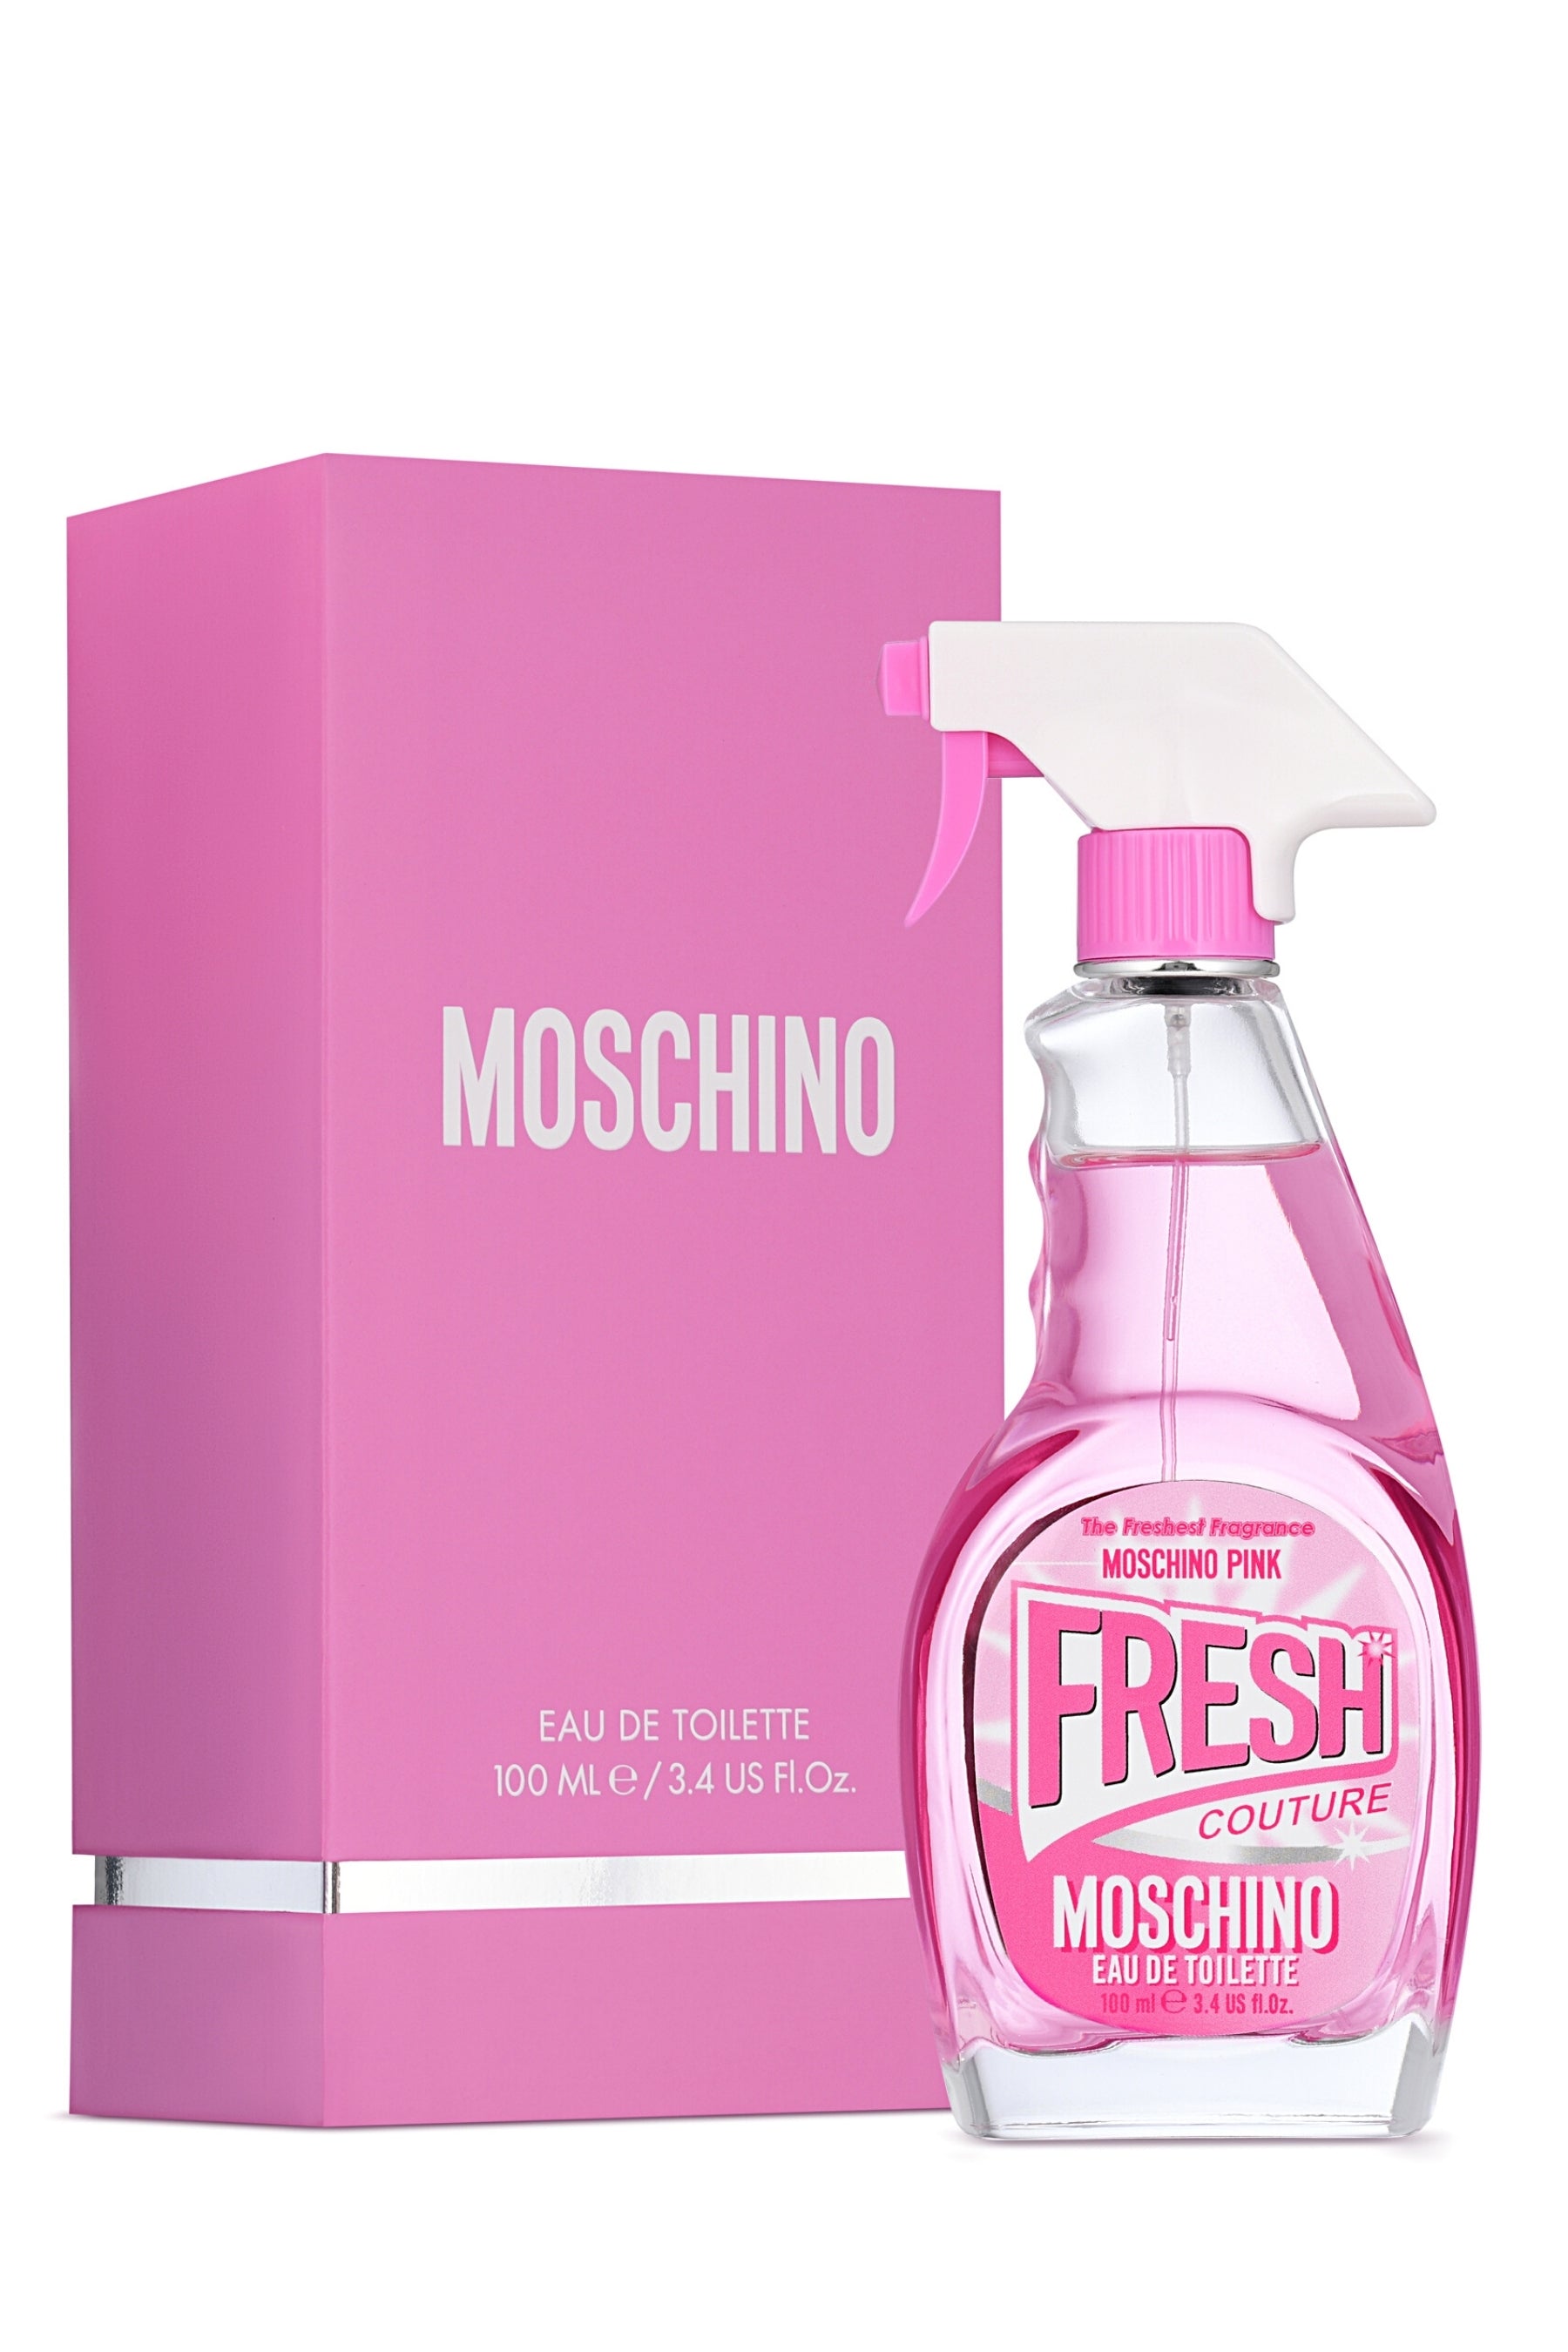 Tol Getalenteerd Onderdrukken REBL | Moschino | Pink Fresh Couture